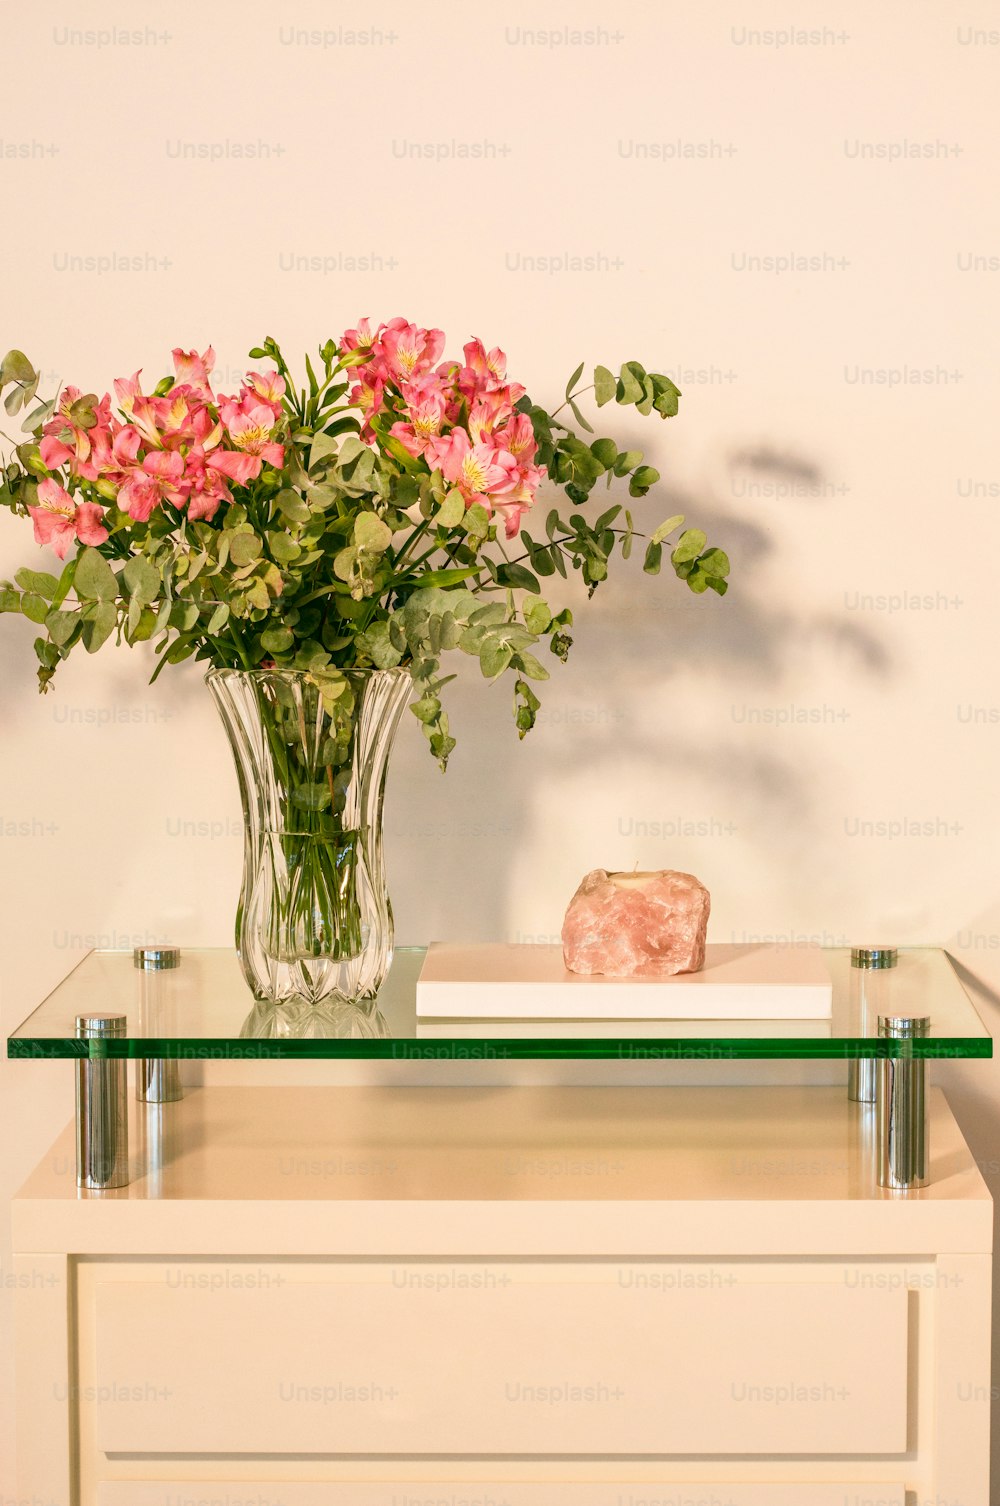 un vase de fleurs roses posé sur une table